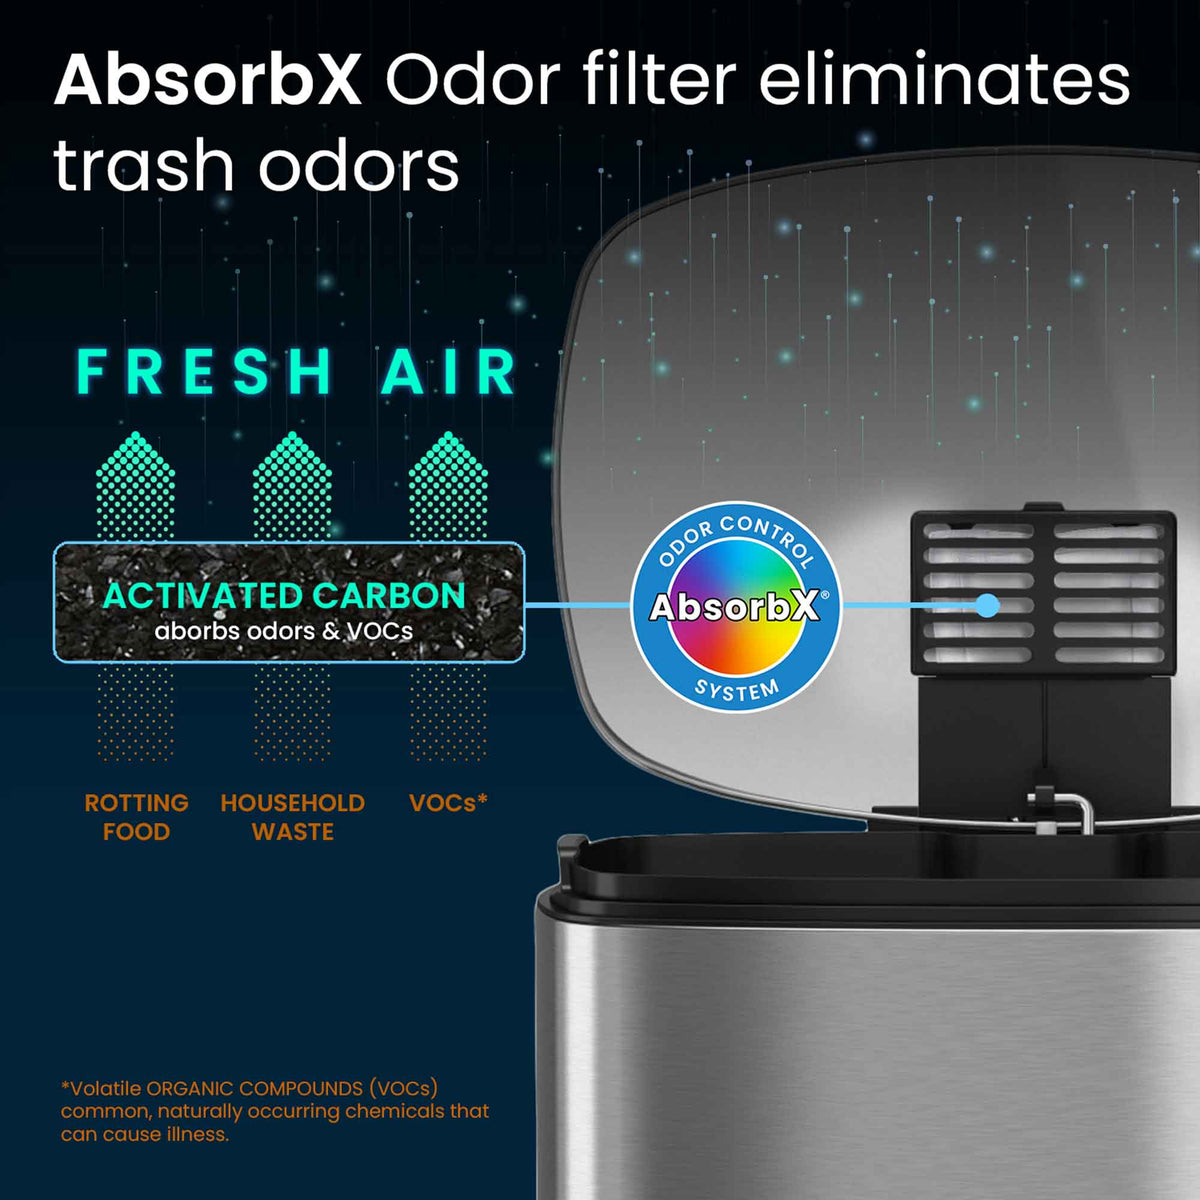 1.32 Gallon / 5 Liter SoftStep Step Pedal Trash Can AbsorbX Odor Filter eliminates trash odors